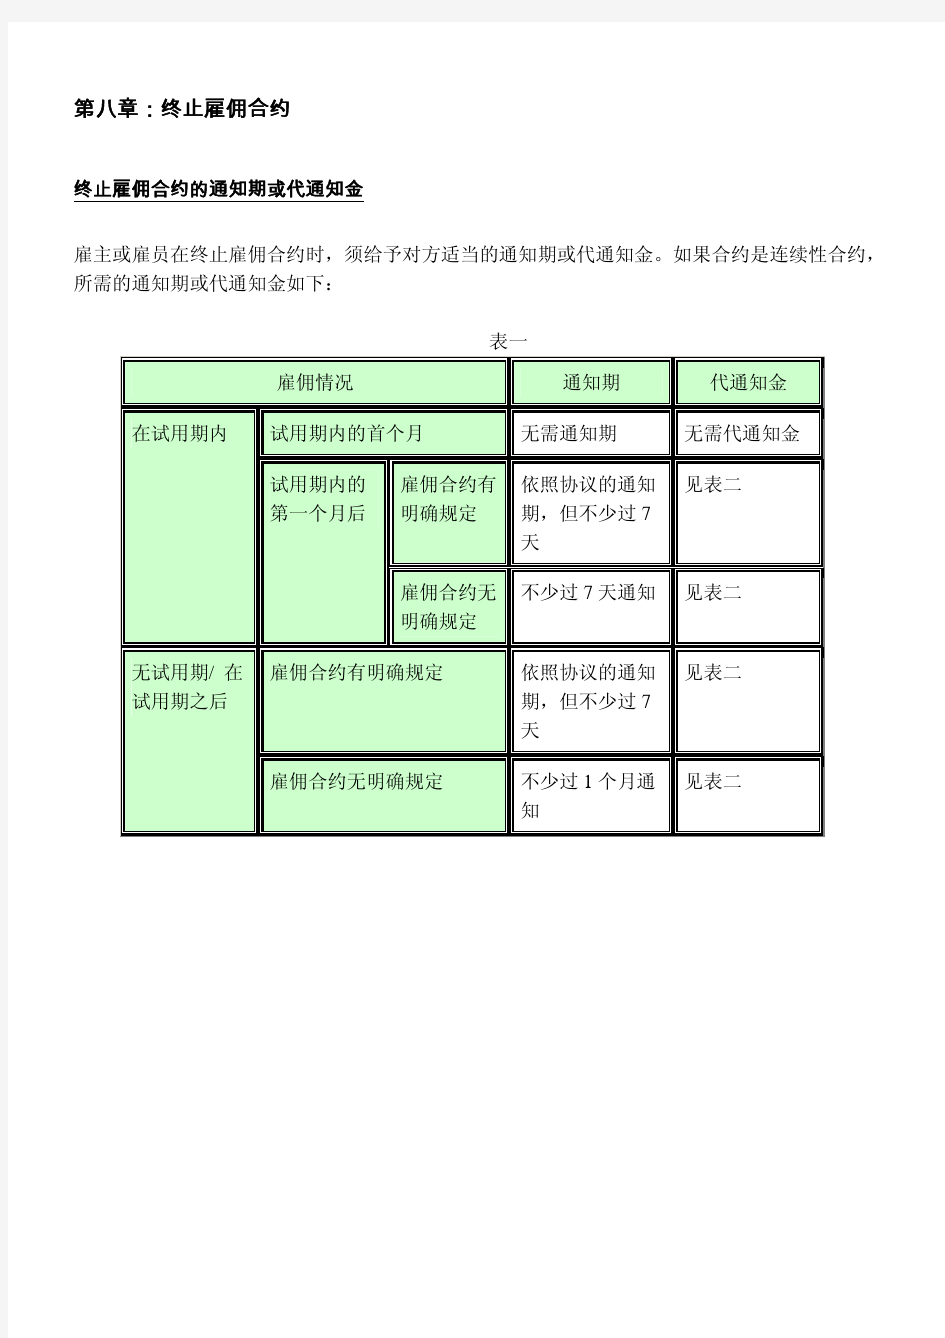 香港雇佣条例简明指南-08第八章：终止雇佣合约